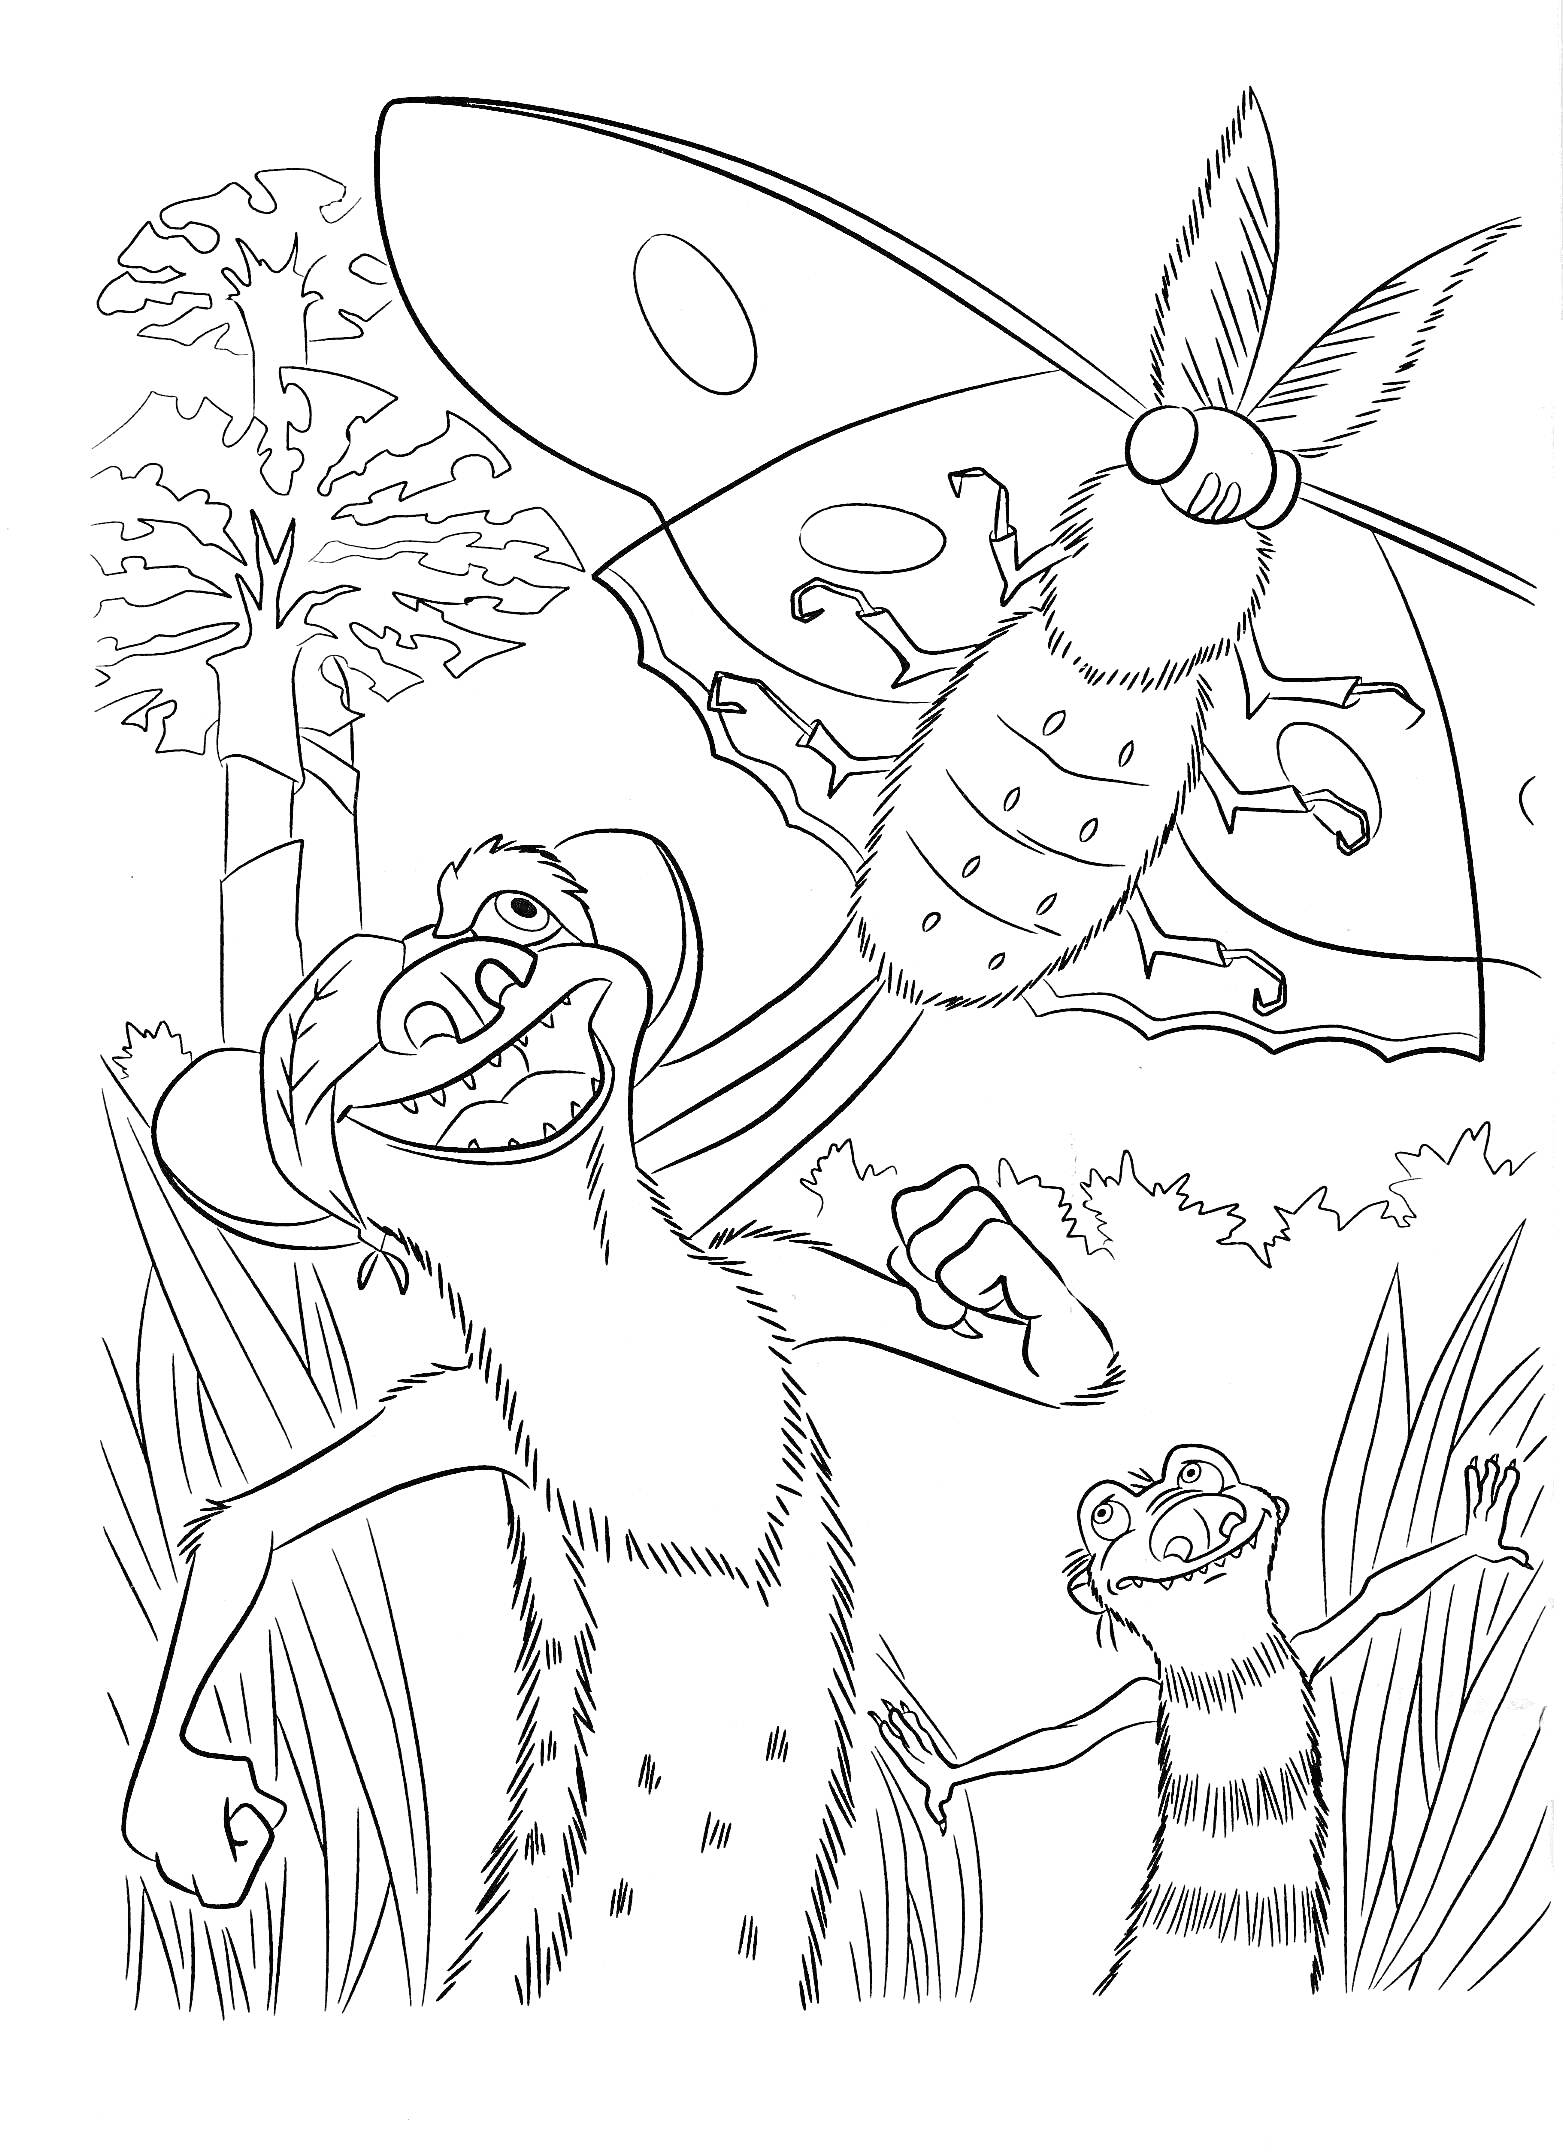 Два веселых зверька среди высокой травы и огромная летающая букашка на фоне дерева